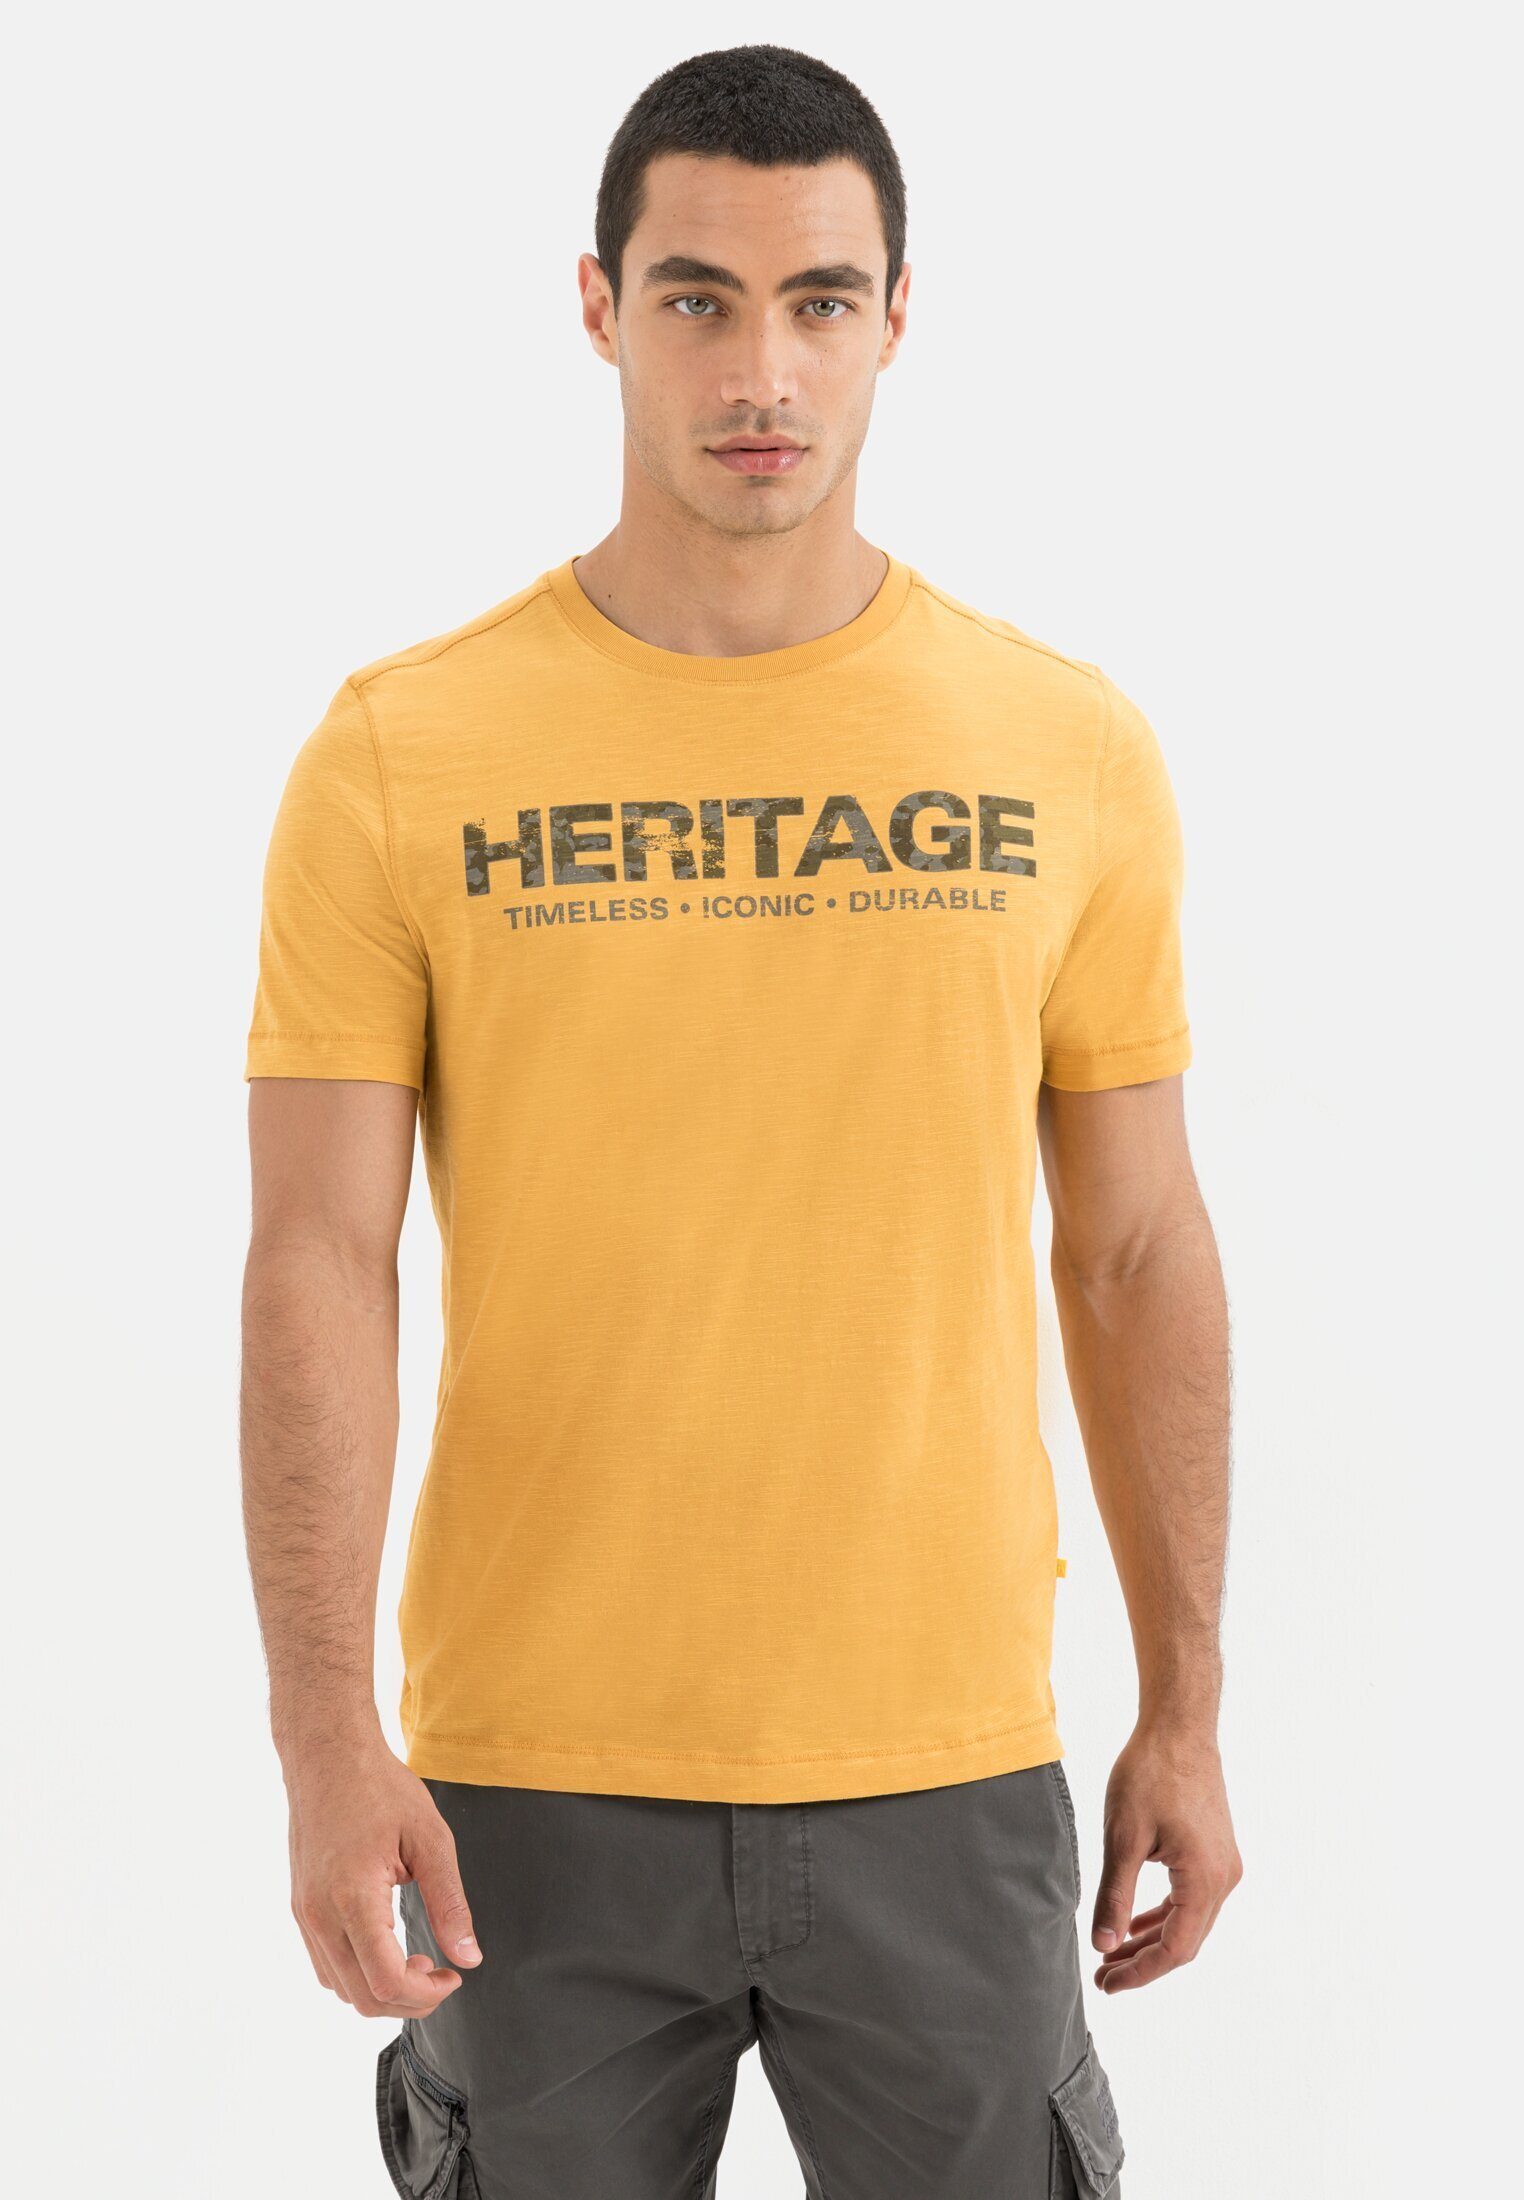 active Bio-Baumwolle aus Gelb camel T-Shirt